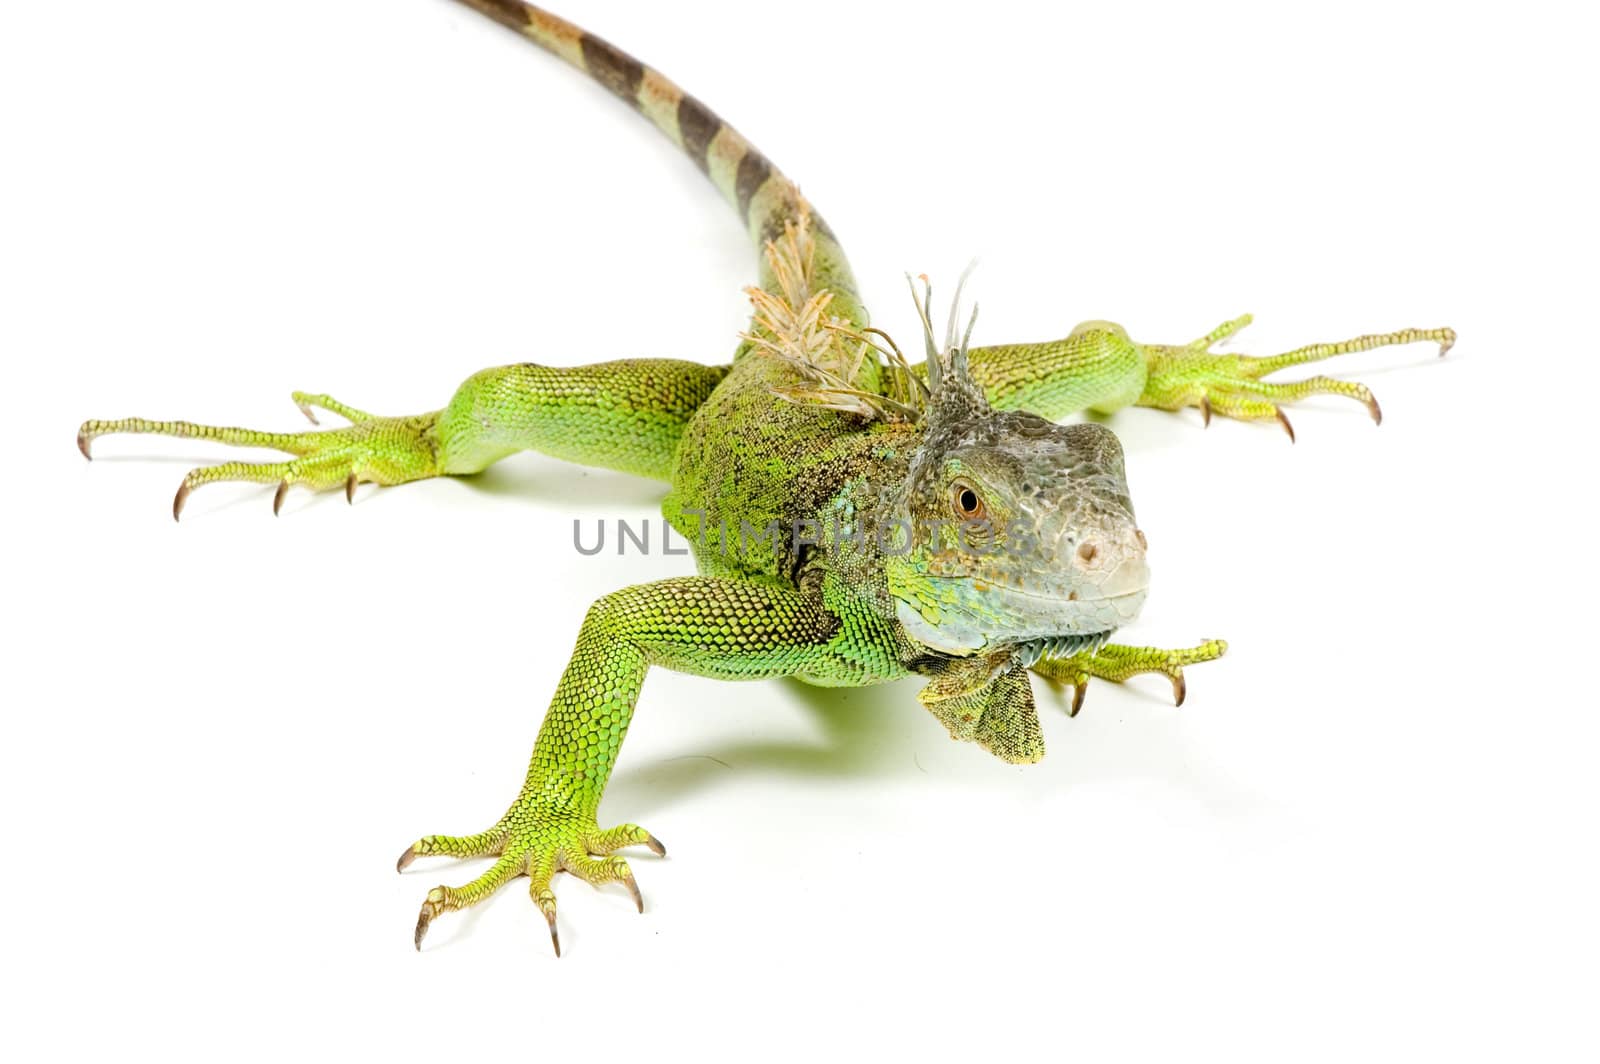 iguana isolated on a white background